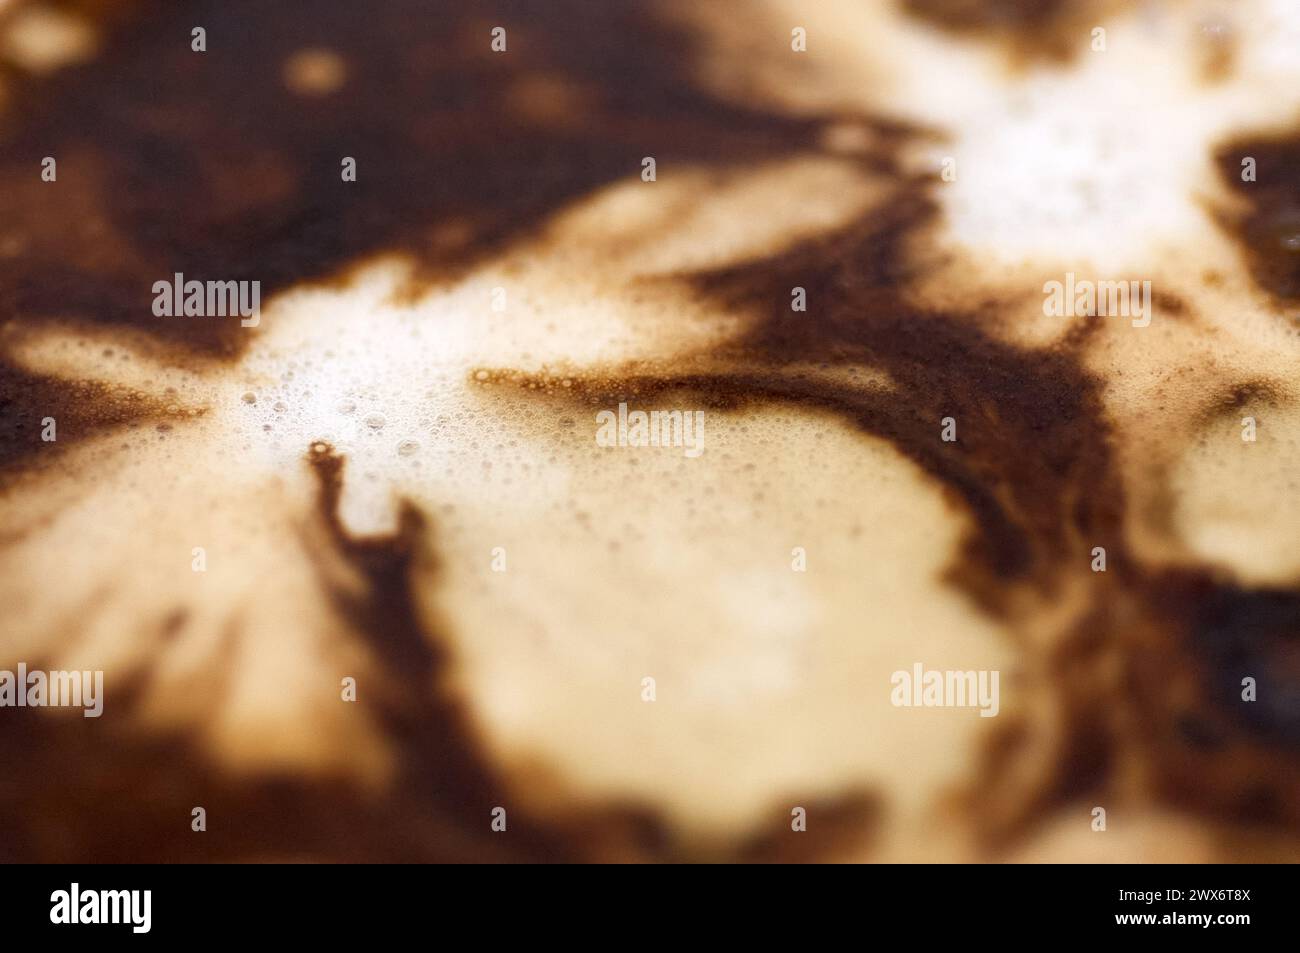 Das Bild zeigt einen Kaffee mit abstraktem Design im Schaumstoff, der einen faszinierenden visuellen Kontrast schafft, der zur Nachsicht einlädt. Stockfoto